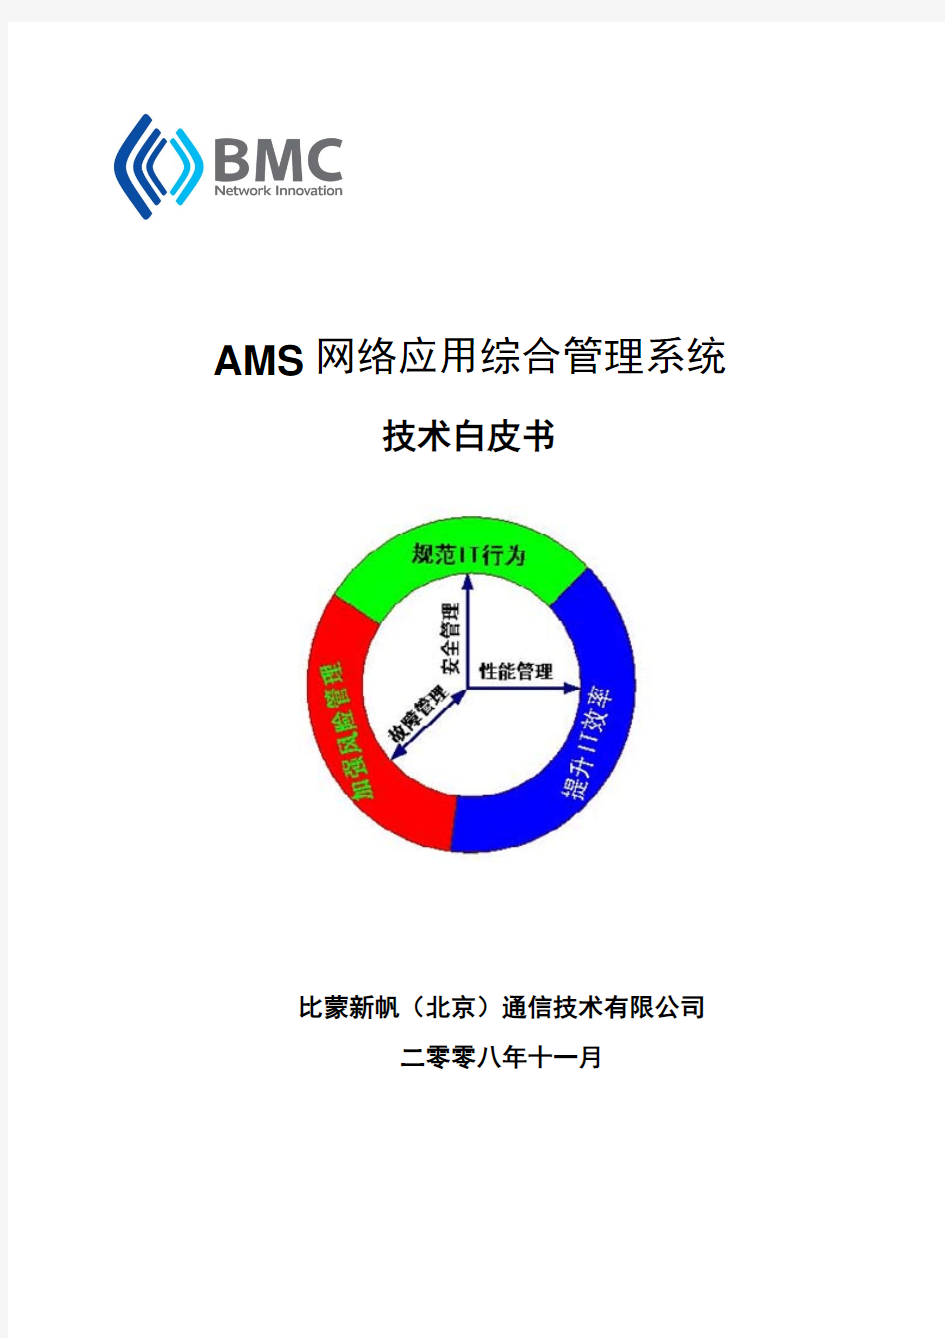 AMS企业IT应用管理系统技术白皮书